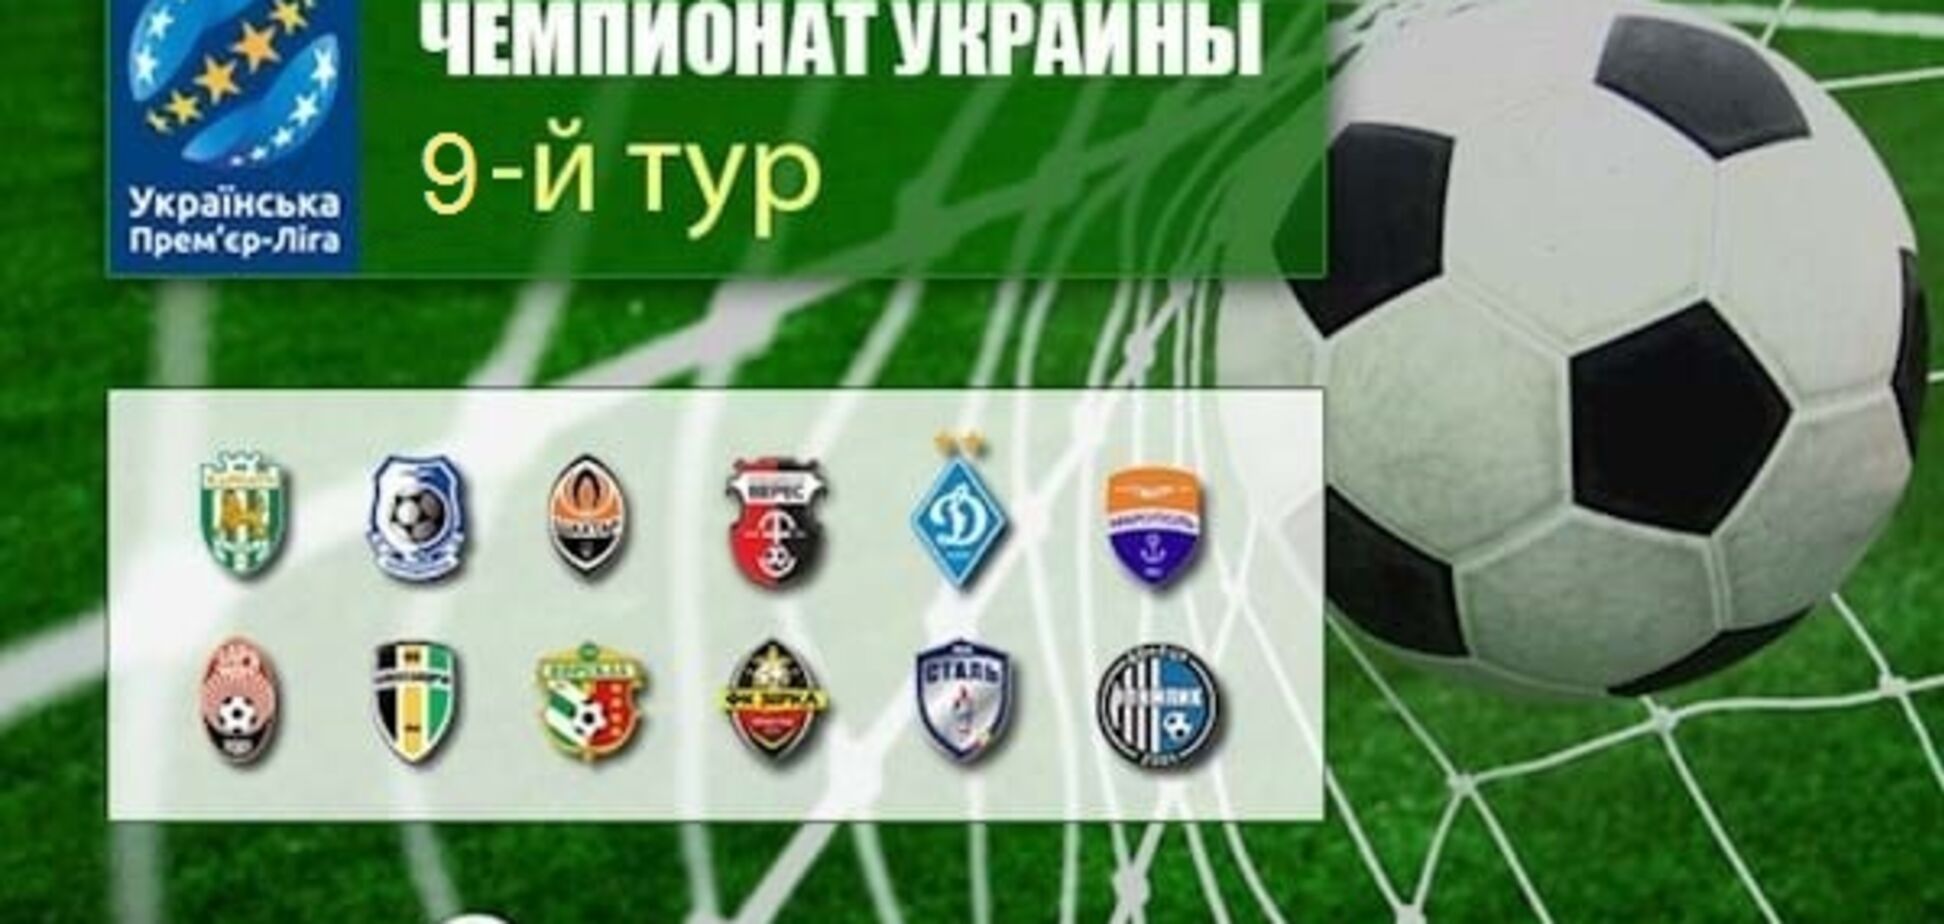 9-й тур чемпионата Украины по футболу: результаты, обзоры, турнирная таблица